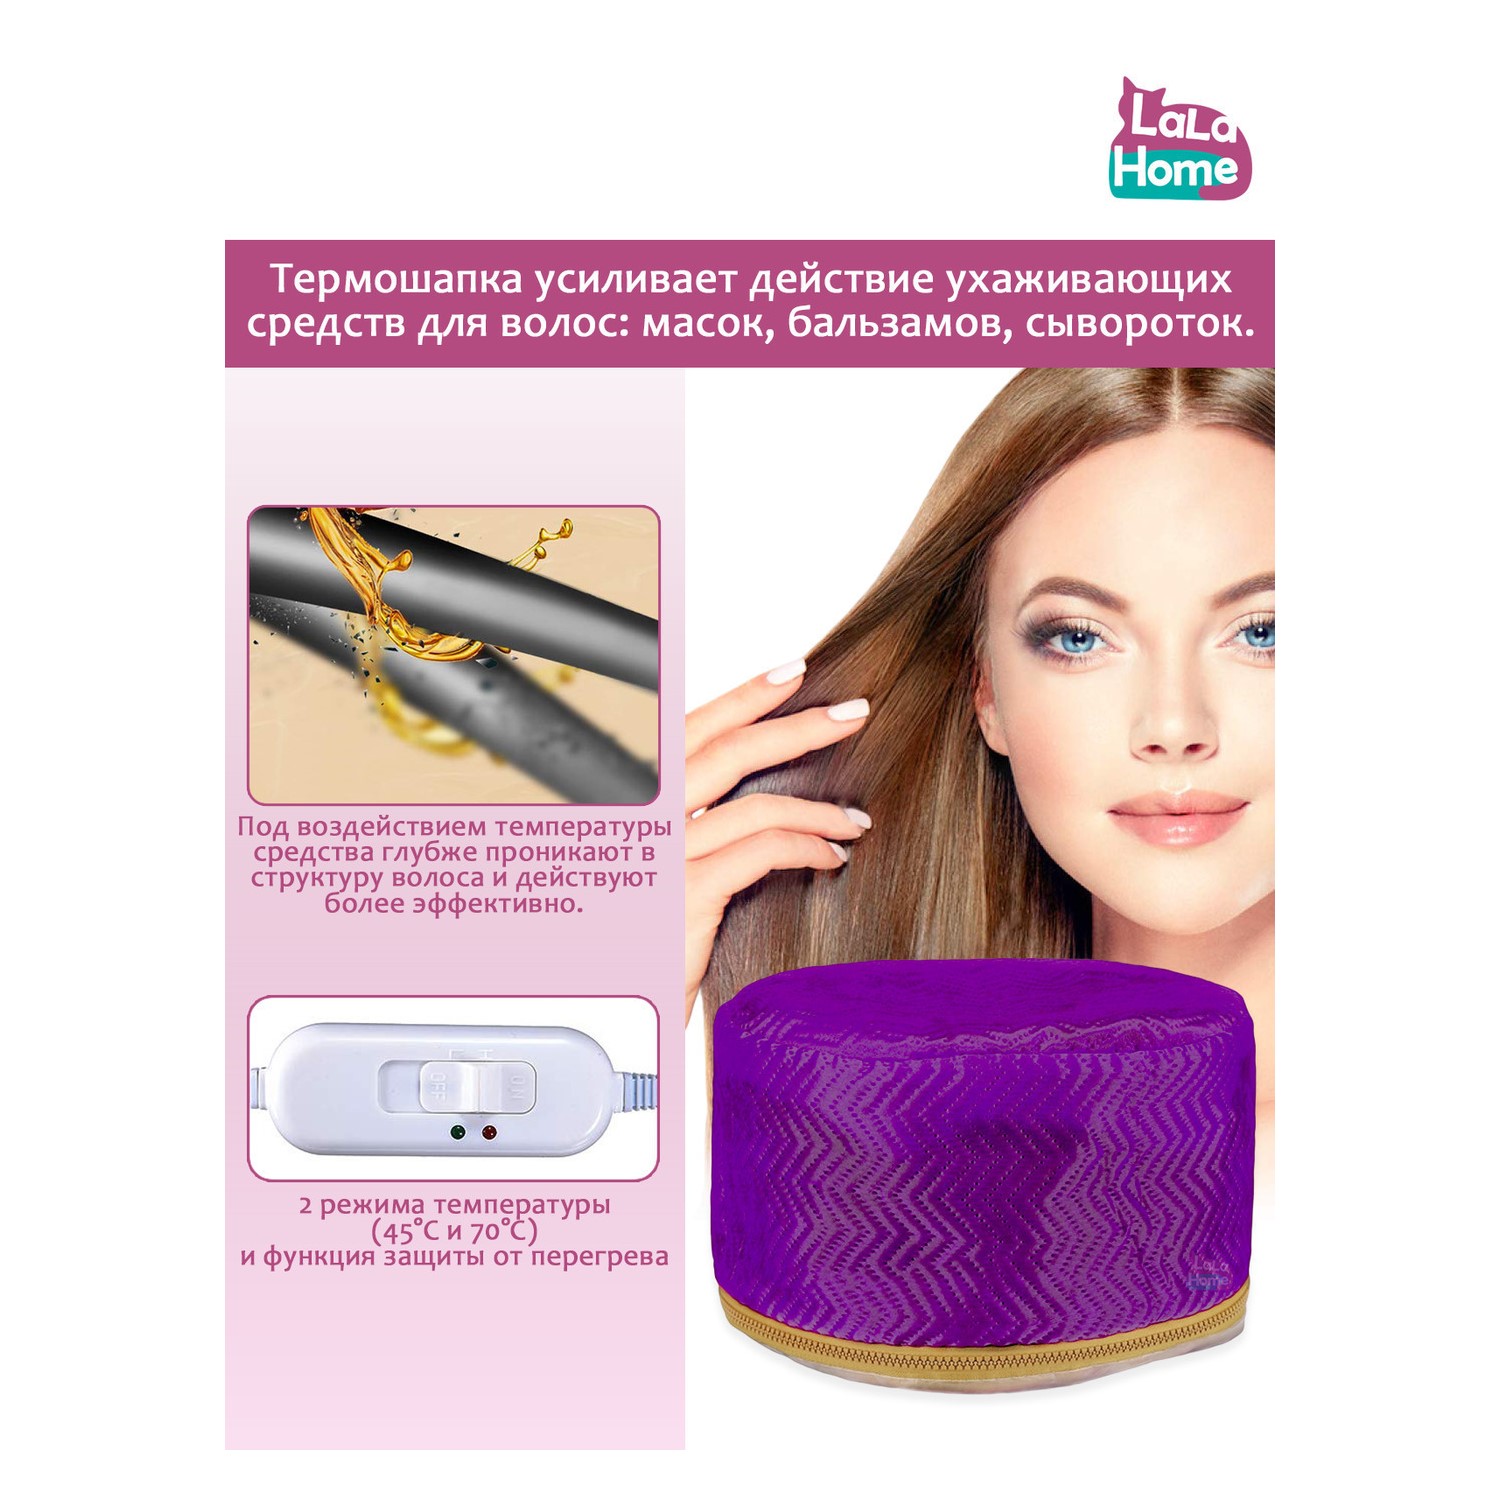 Термошапка для волос LaLa-Home электрическая с евровилкой - фото 2